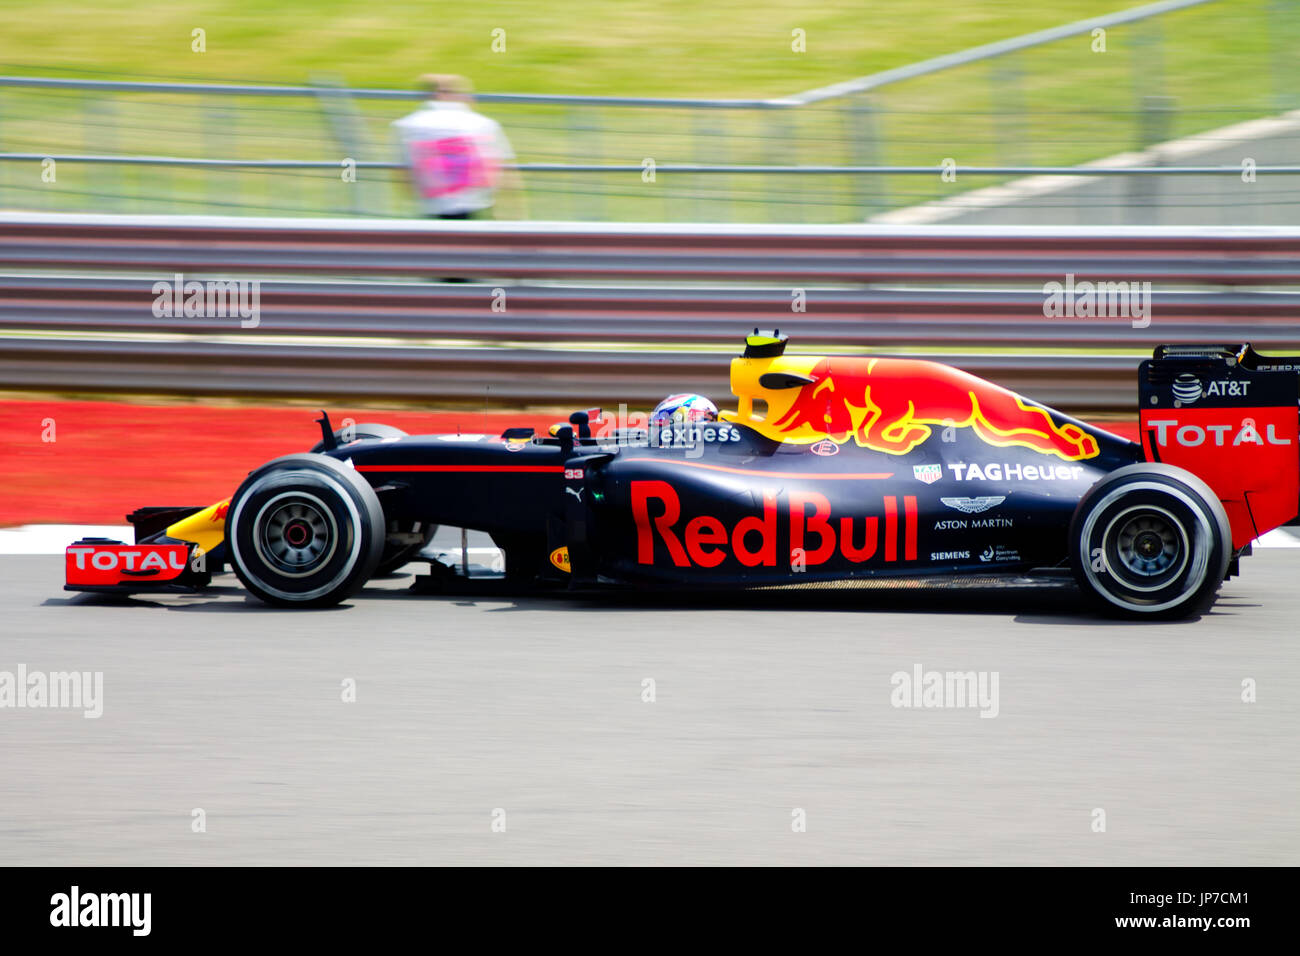 Red Bull bei der die erste Ecke des Grand Prix von Silverstone circuit während der 2016 britischen Formel 1 Grand Prix Stockfoto